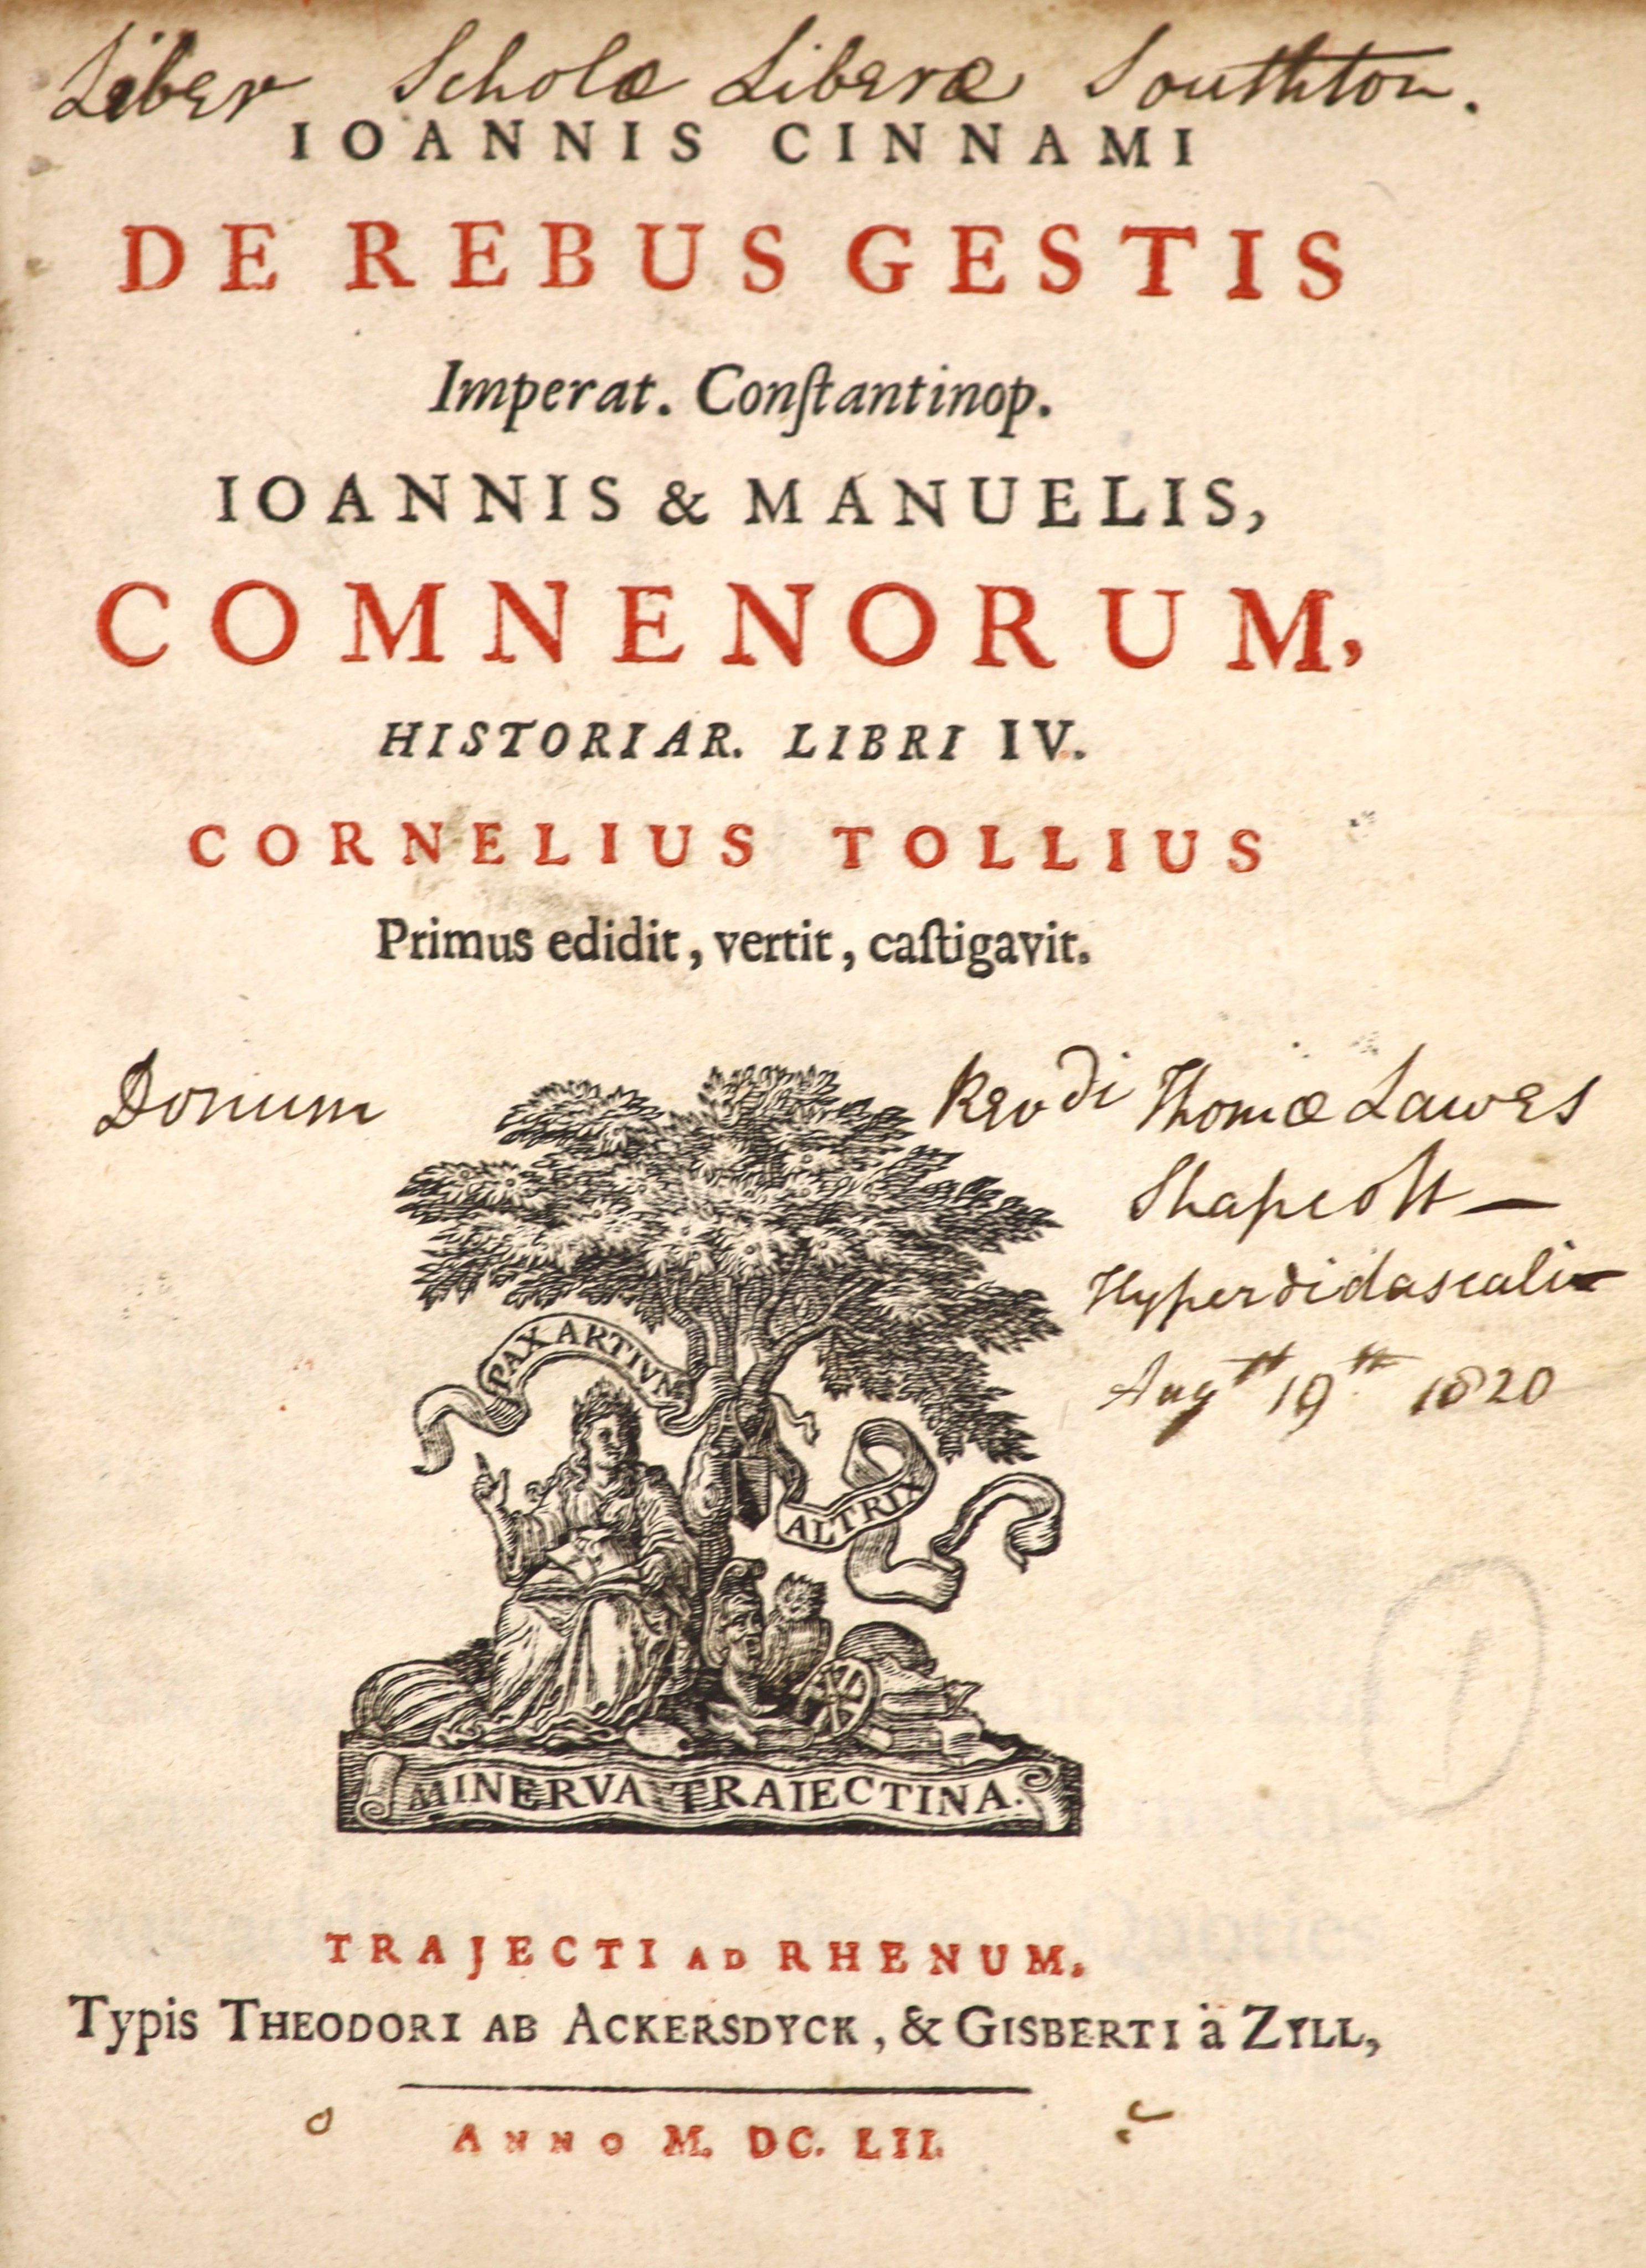 ° Cinnamus, Johannes - De Rebus Gestis ... Comnenorum, Historiar. Libri IV. recently rebound half